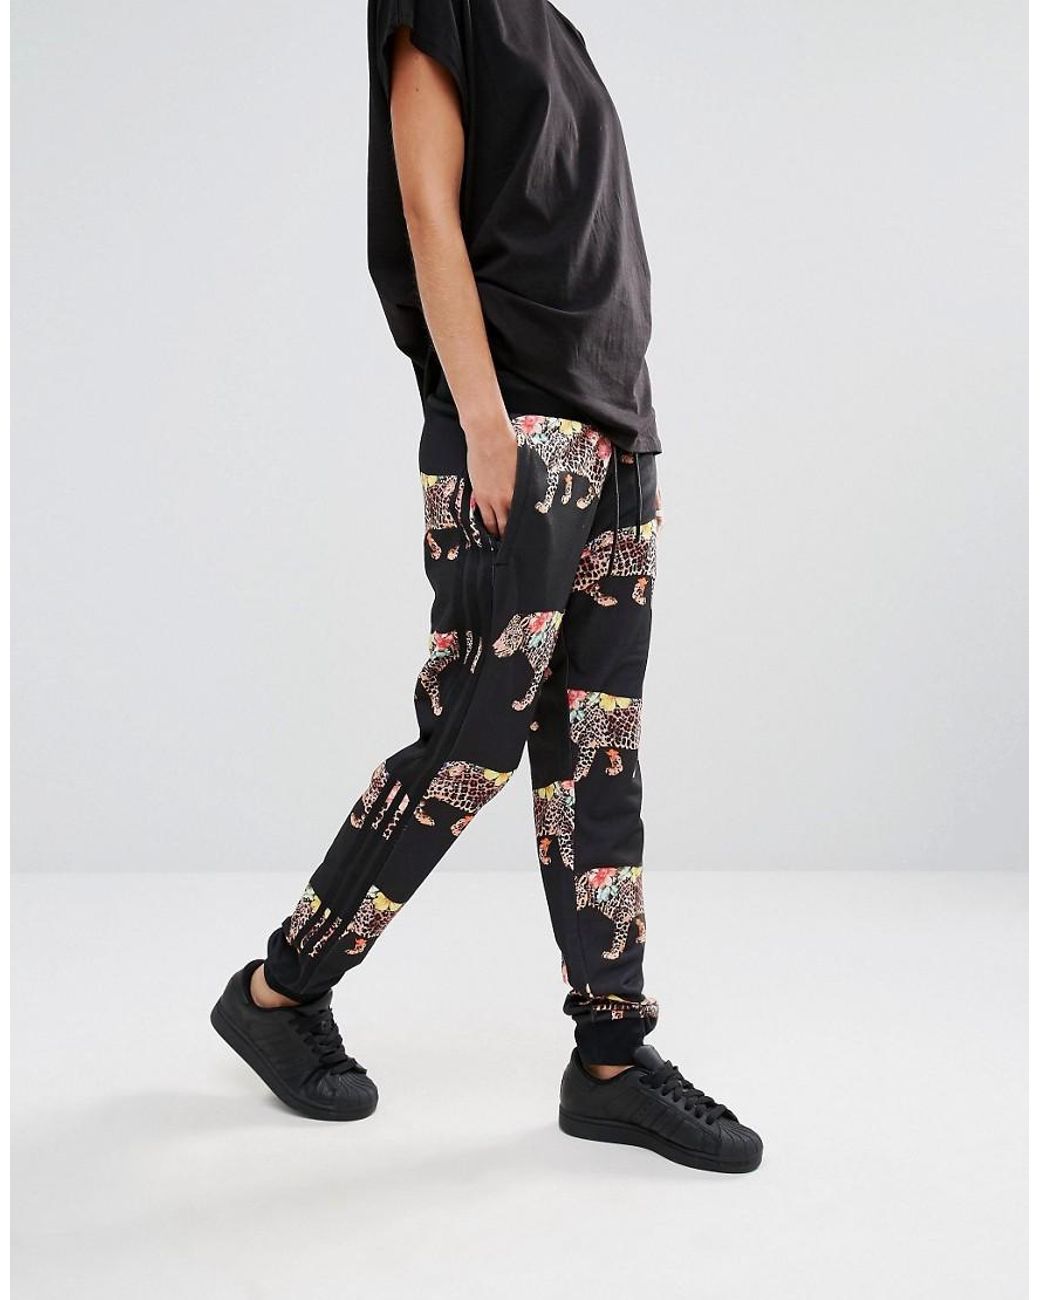 adidas Originals Women's Originals X Farm Multi Leopard Print Cuffed Sweat  Pants